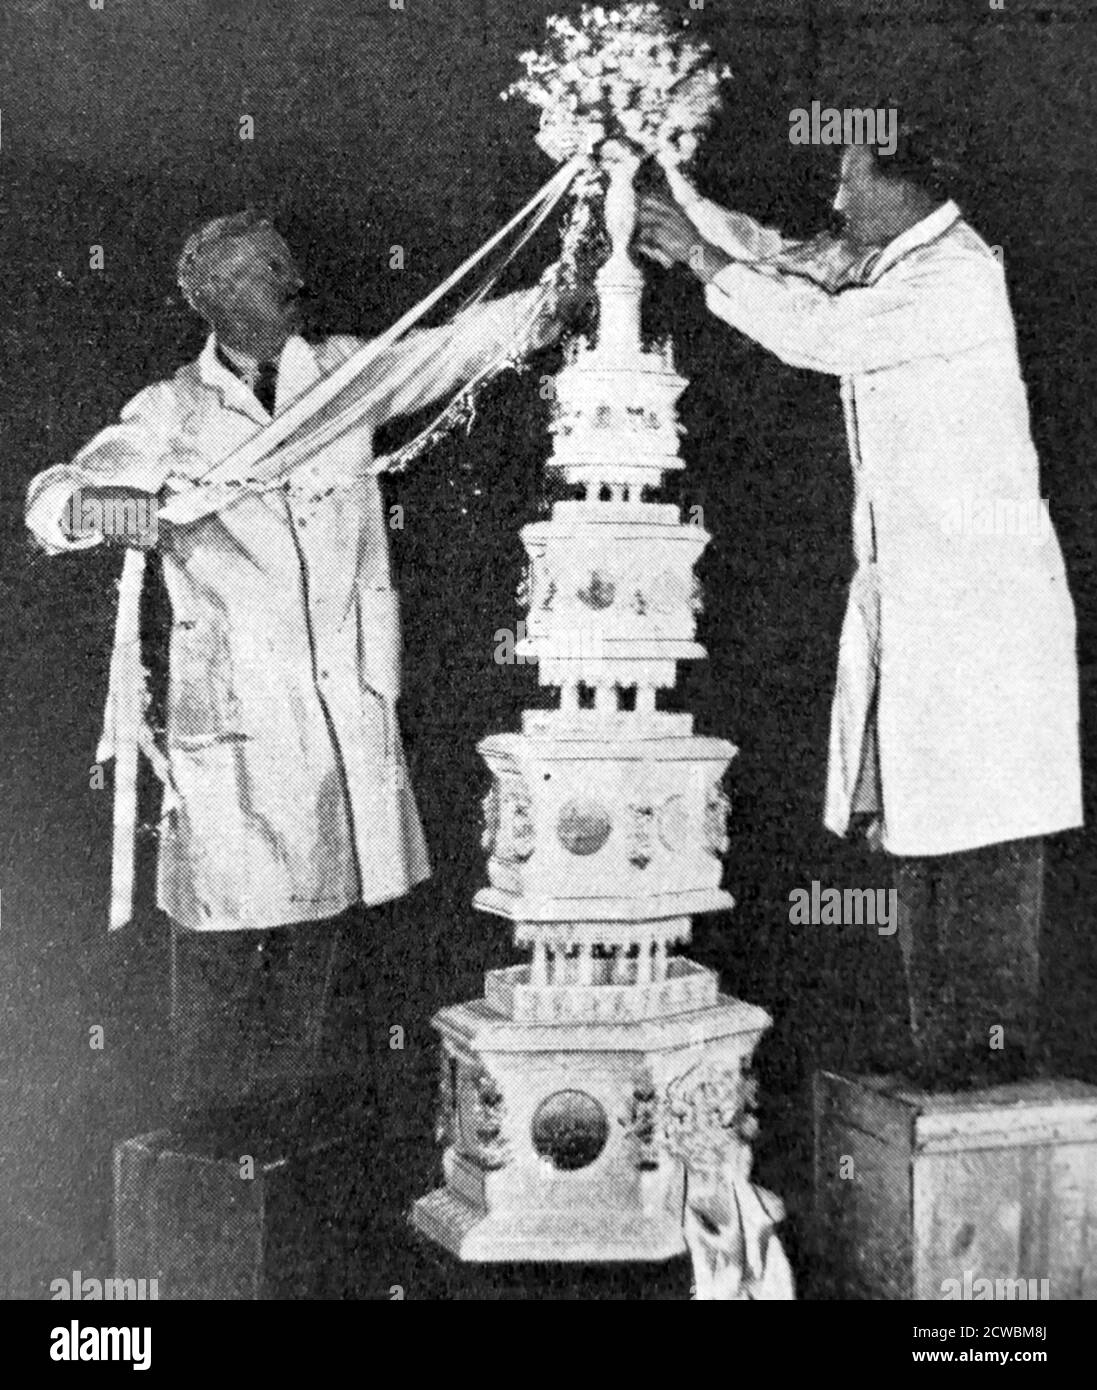 Foto en blanco y negro del pastel de boda para el matrimonio del príncipe Jorge, duque de Kent (1902-1942) y princesa Marina de Grecia (1906-1968); el matrimonio tuvo lugar el 29 de noviembre de 1934. Foto de stock